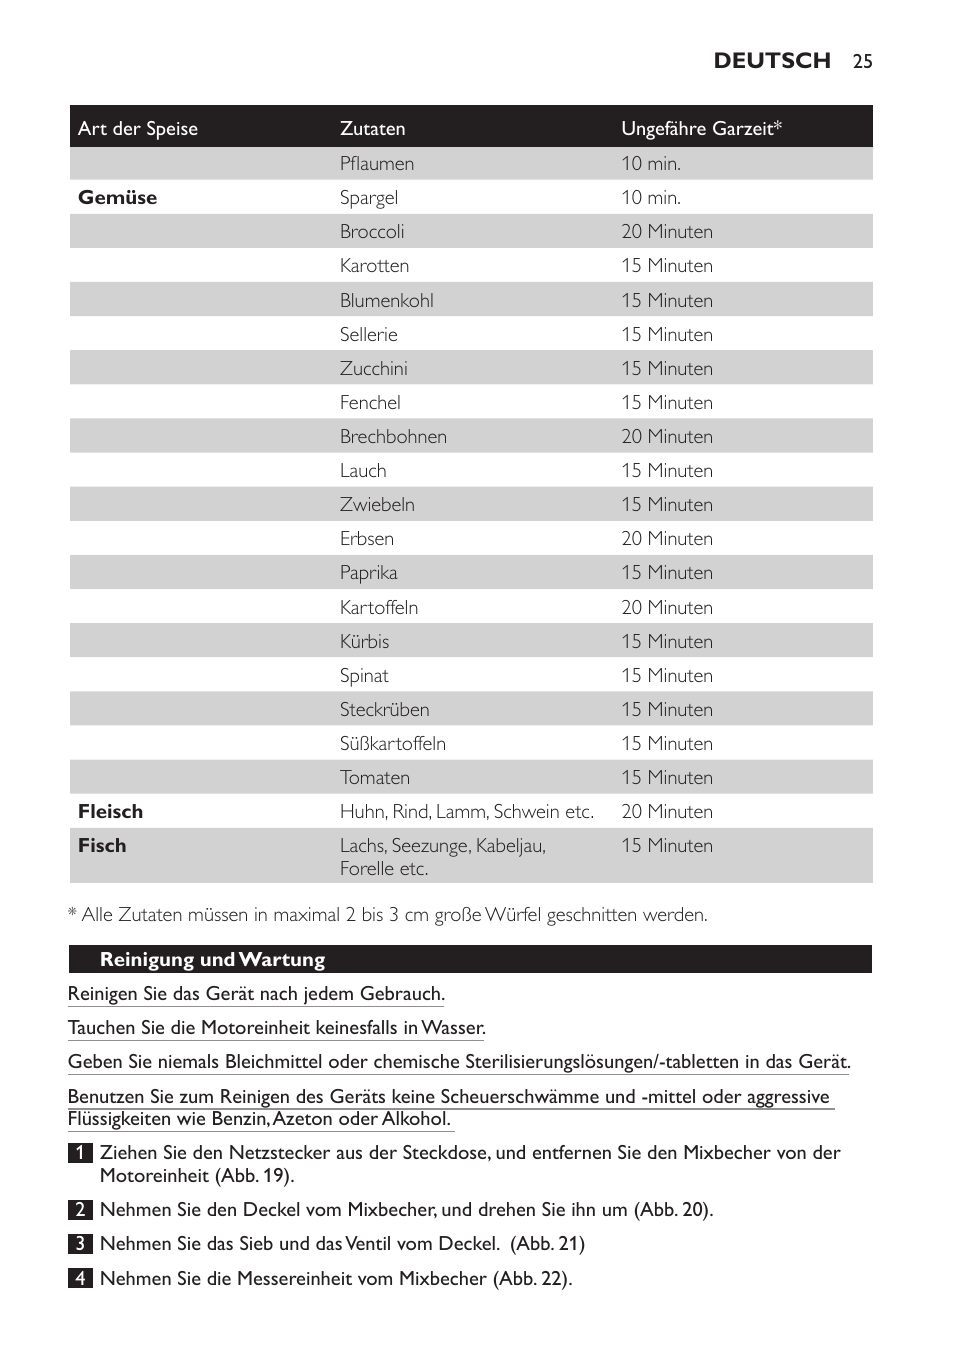 Reinigung und wartung | Philips AVENT Kombinierter Dampfgarer und Mixer  User Manual | Page 25 / 100